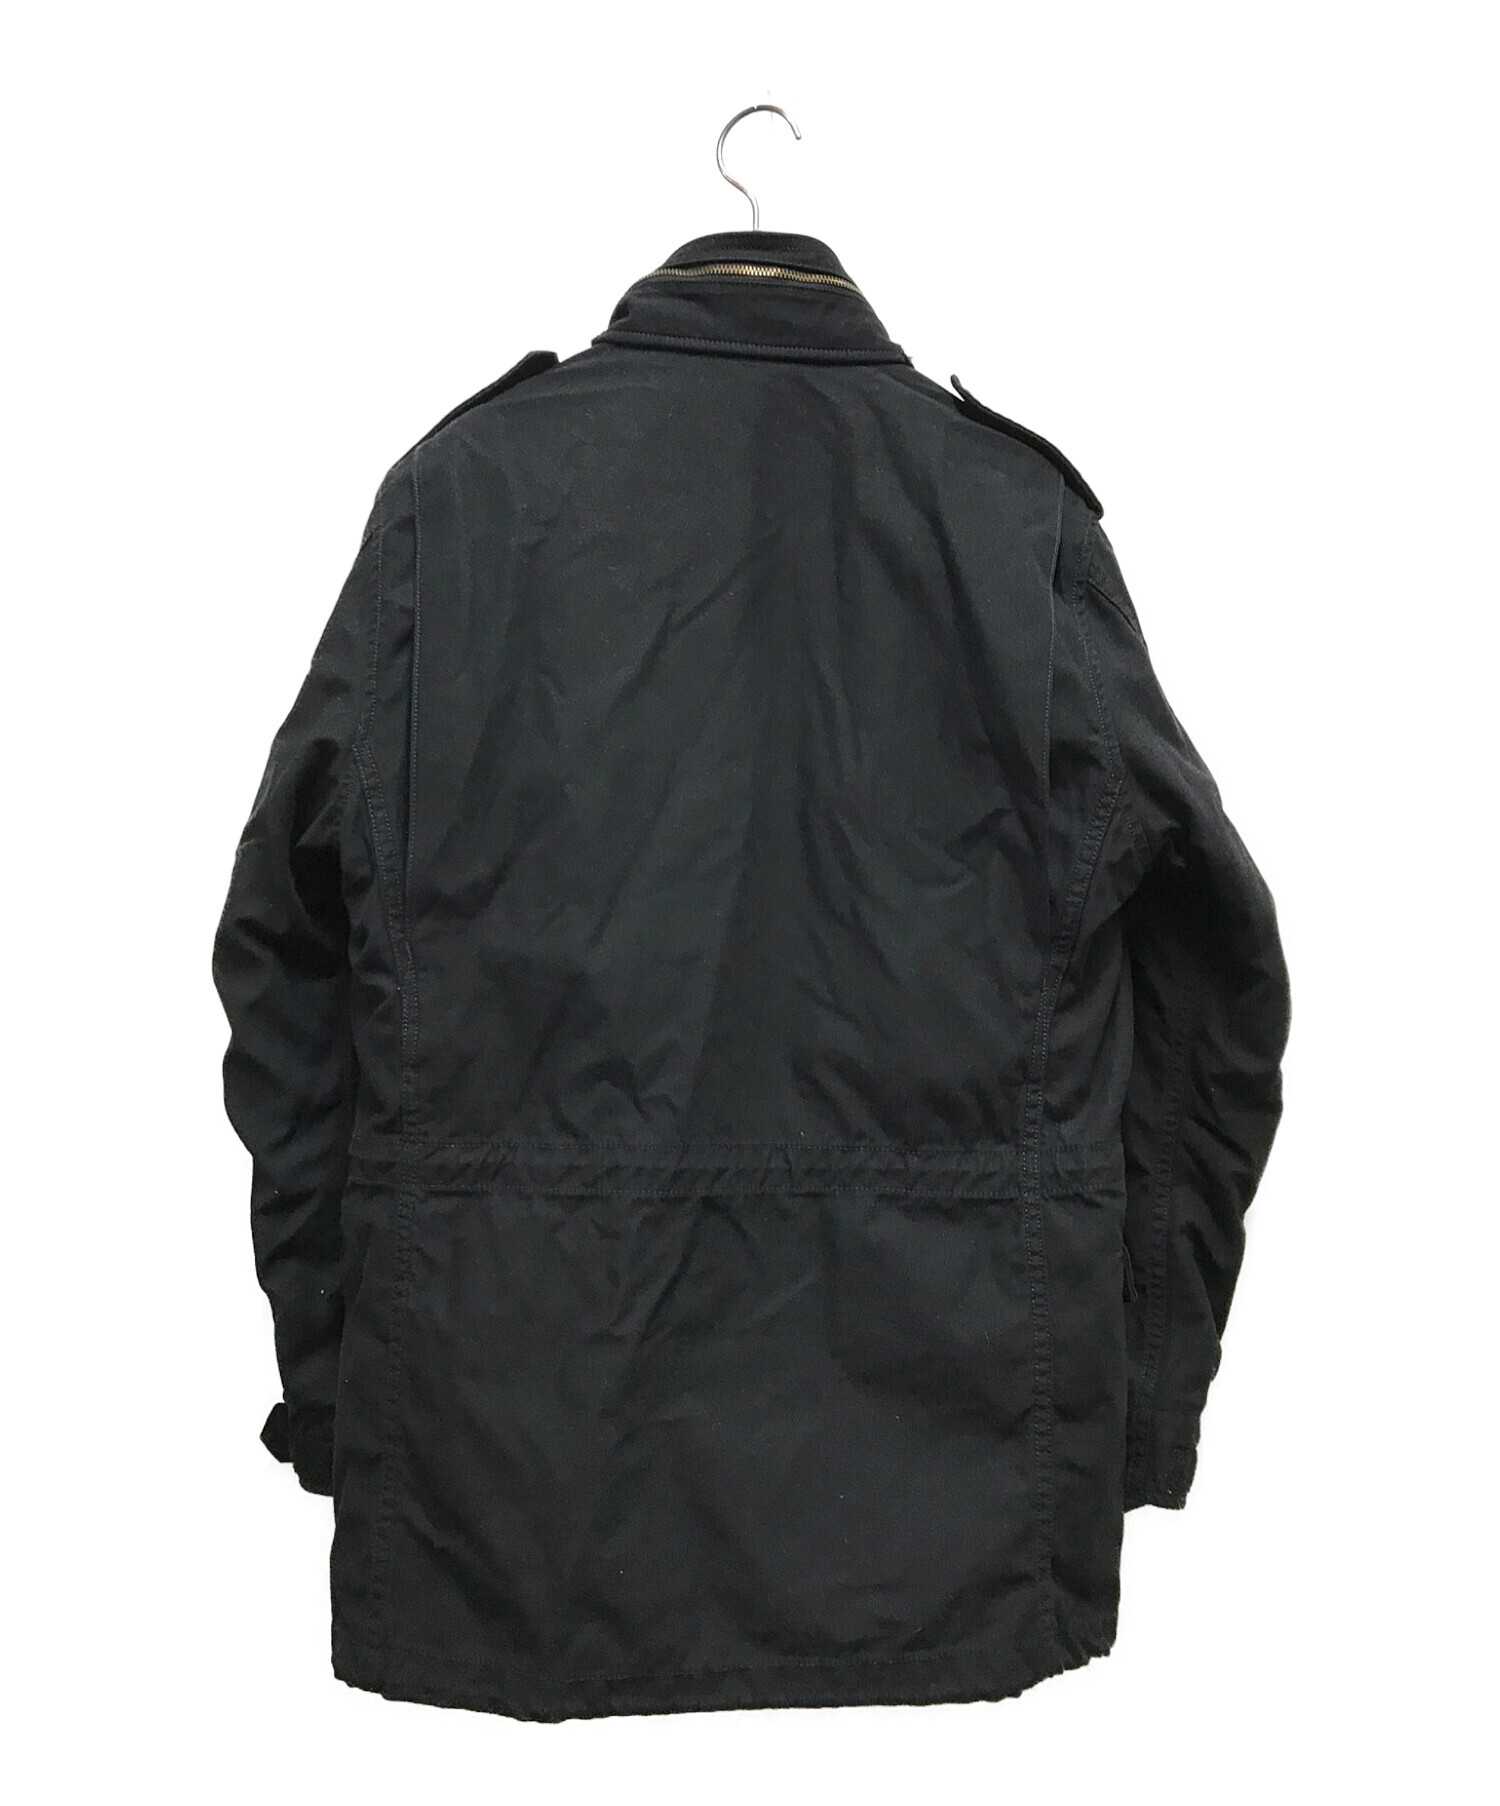 STUSSY×ALPHA (ステューシー×アルファ) コラボM65ジャケット ブラック サイズ:M